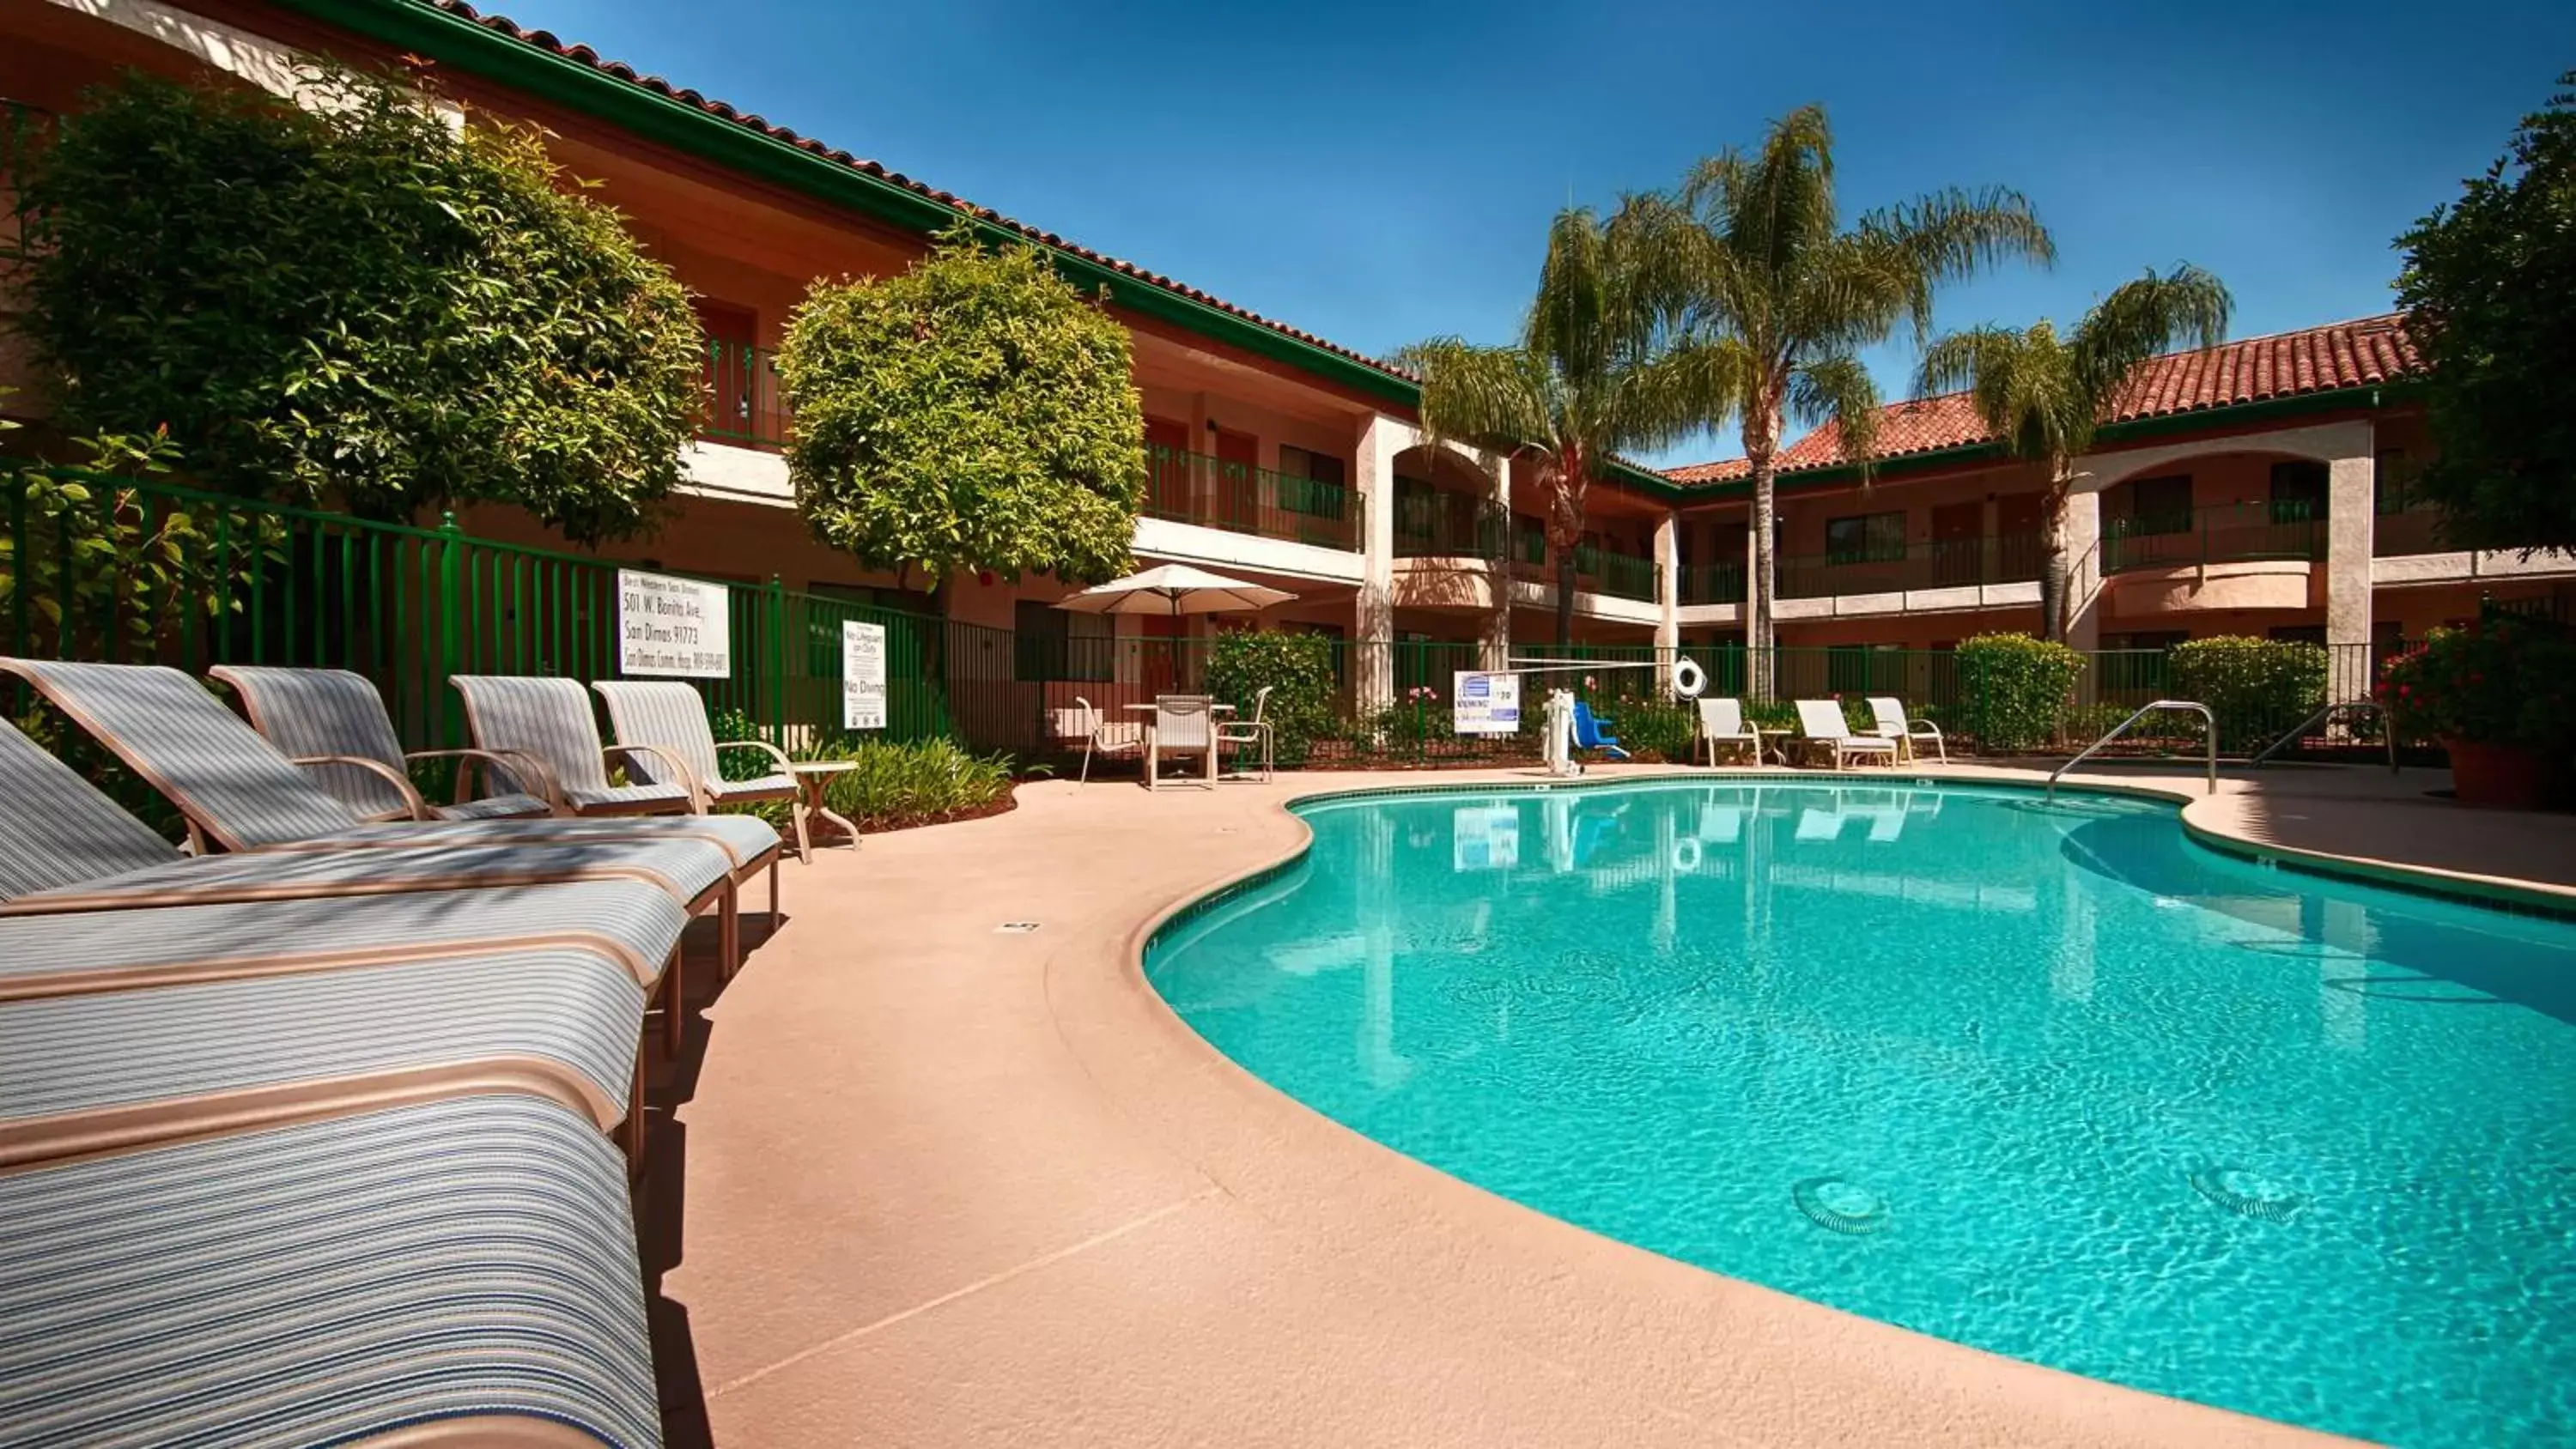 On site, Swimming Pool in Best Western San Dimas Hotel & Suites